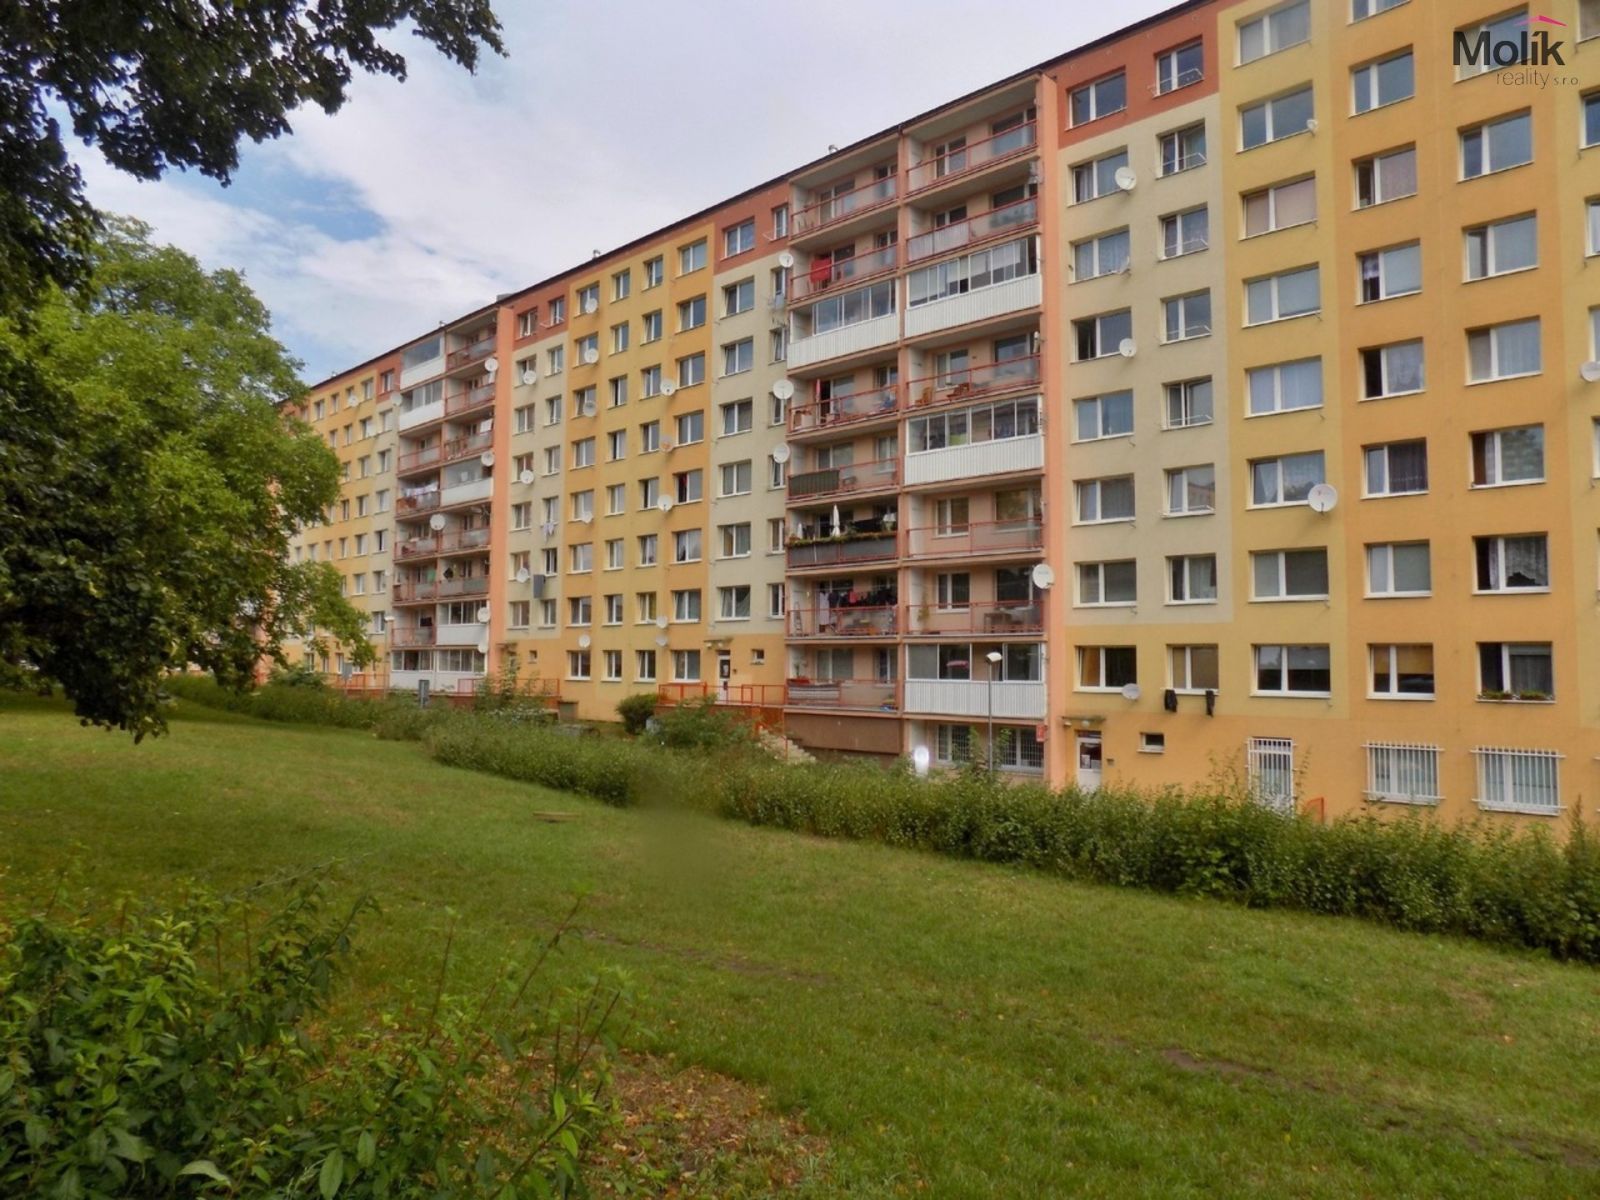 Prodej bytu 1+1 v osobním vlastnictví v Mostě, ul. K. H. Borovského, SLEVA